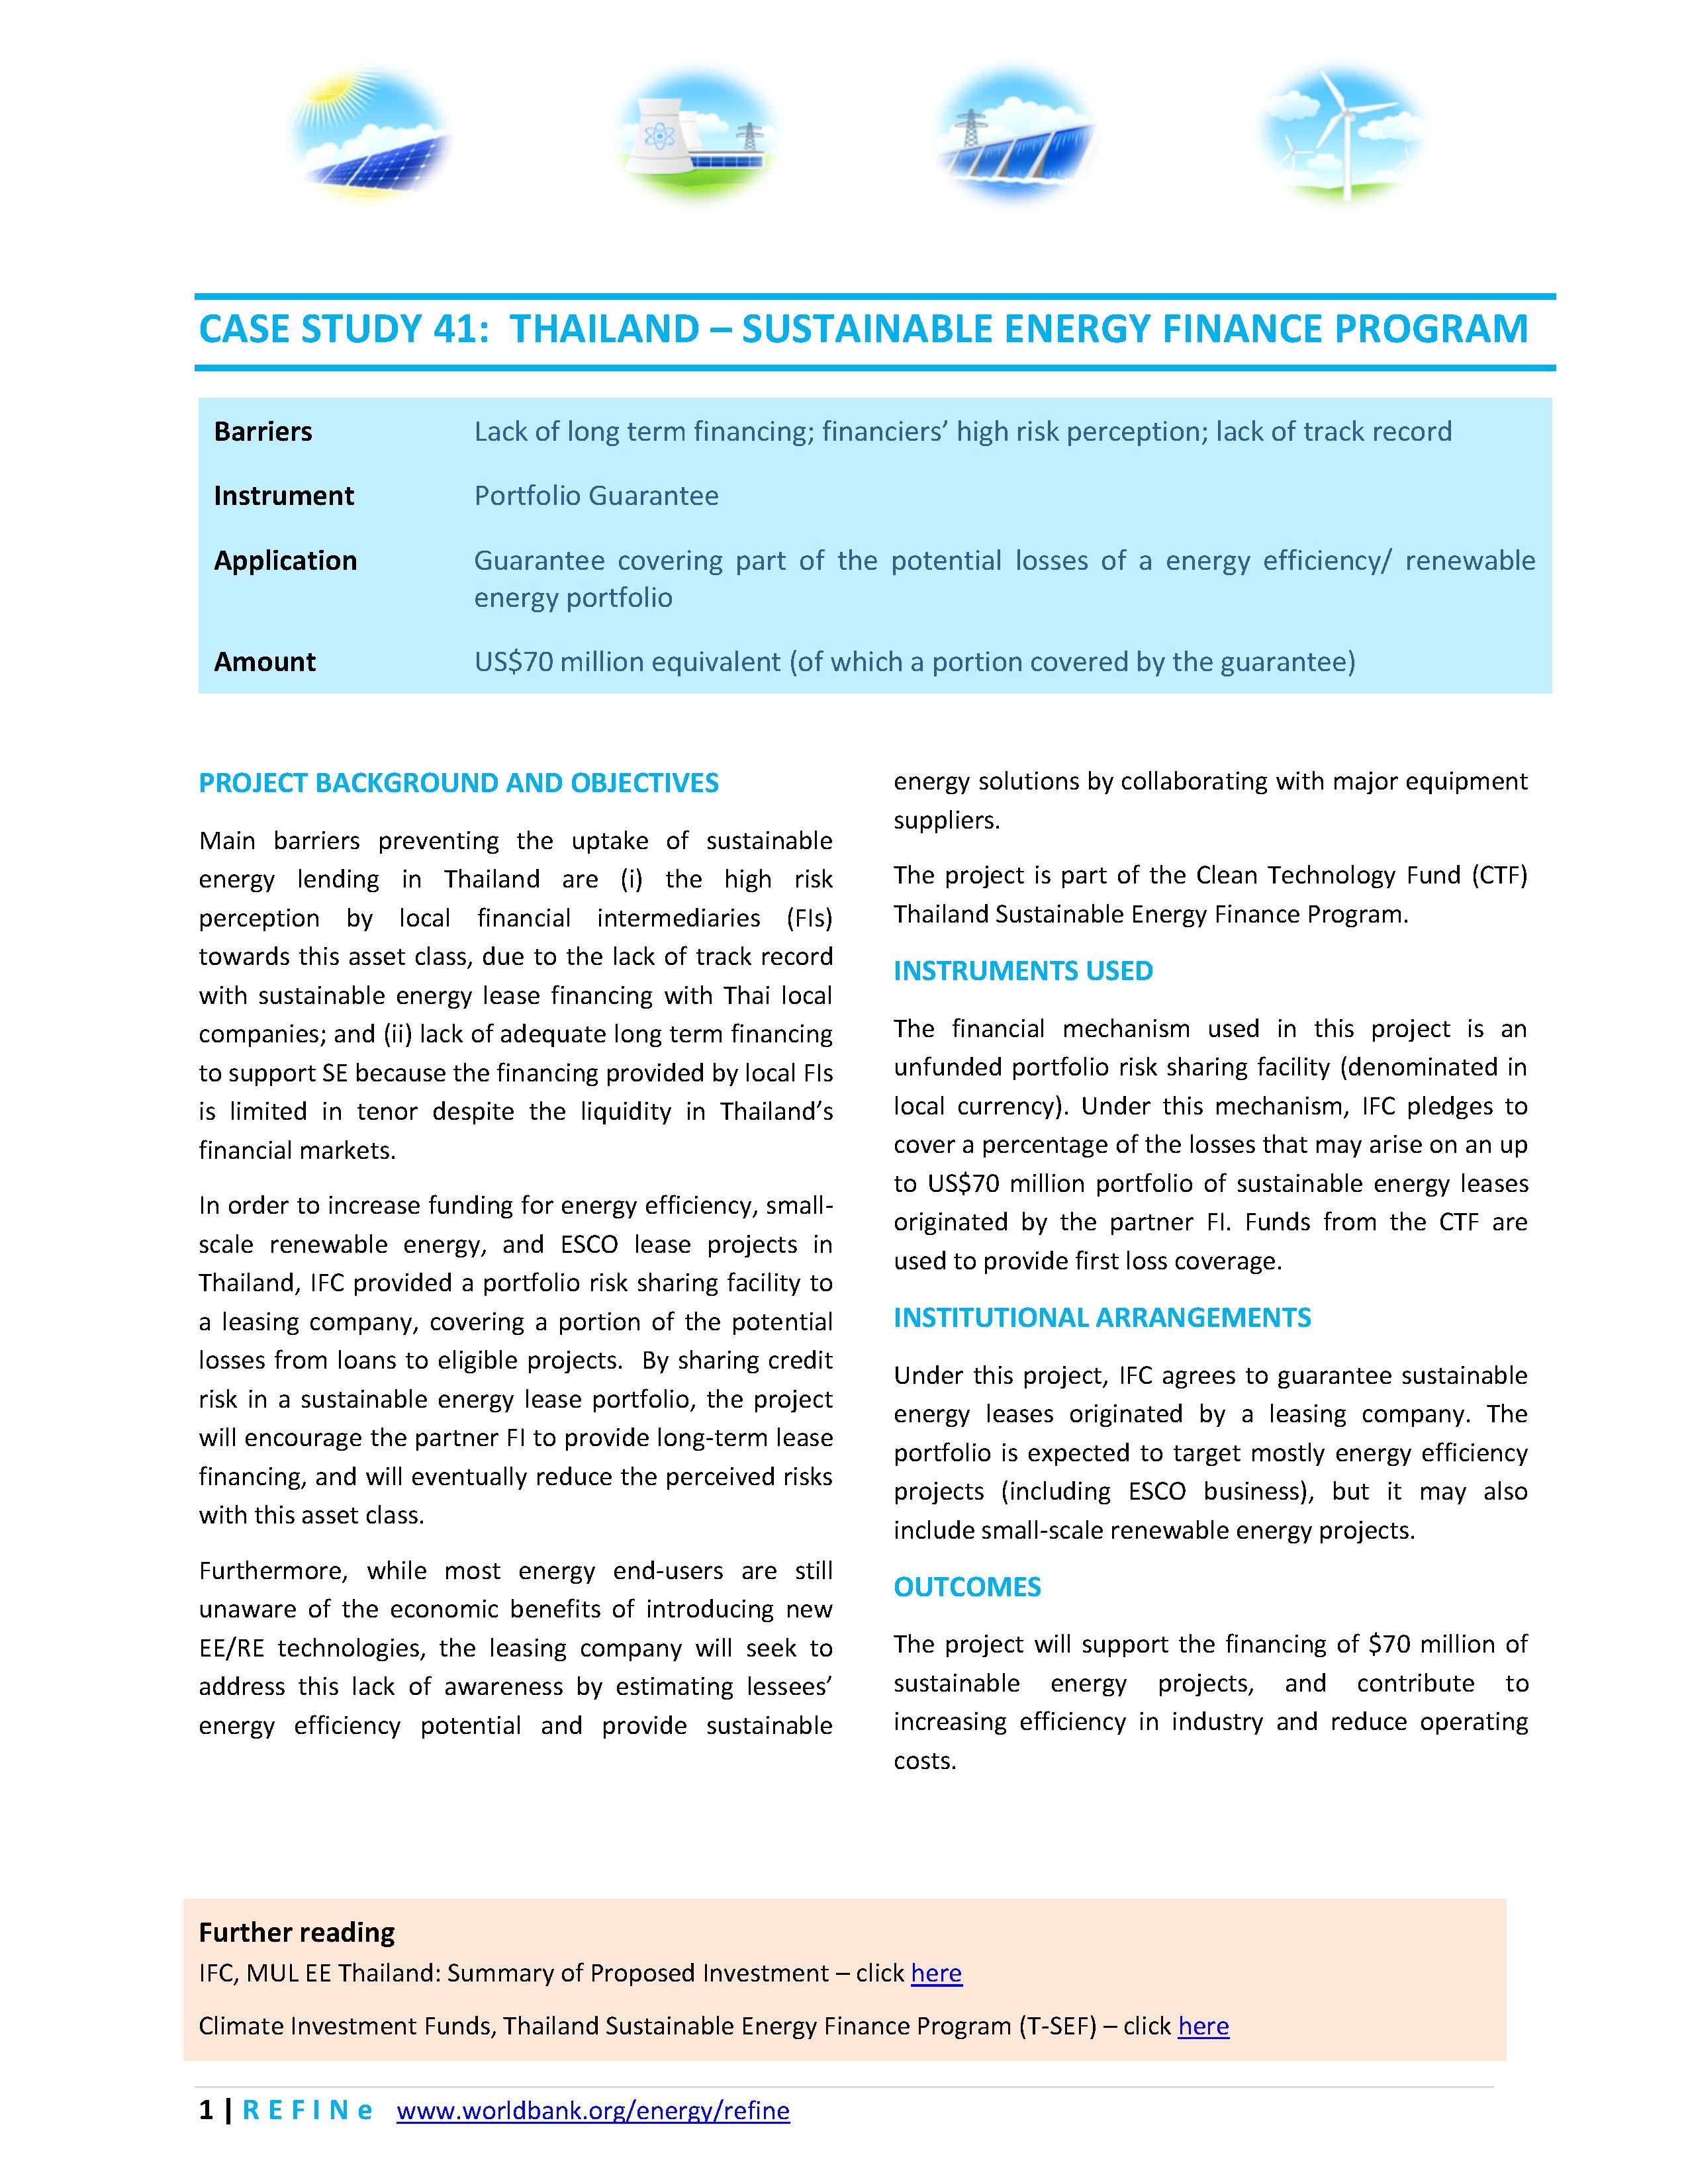 File:Thailand - Sustainable Energy Finance Program.pdf